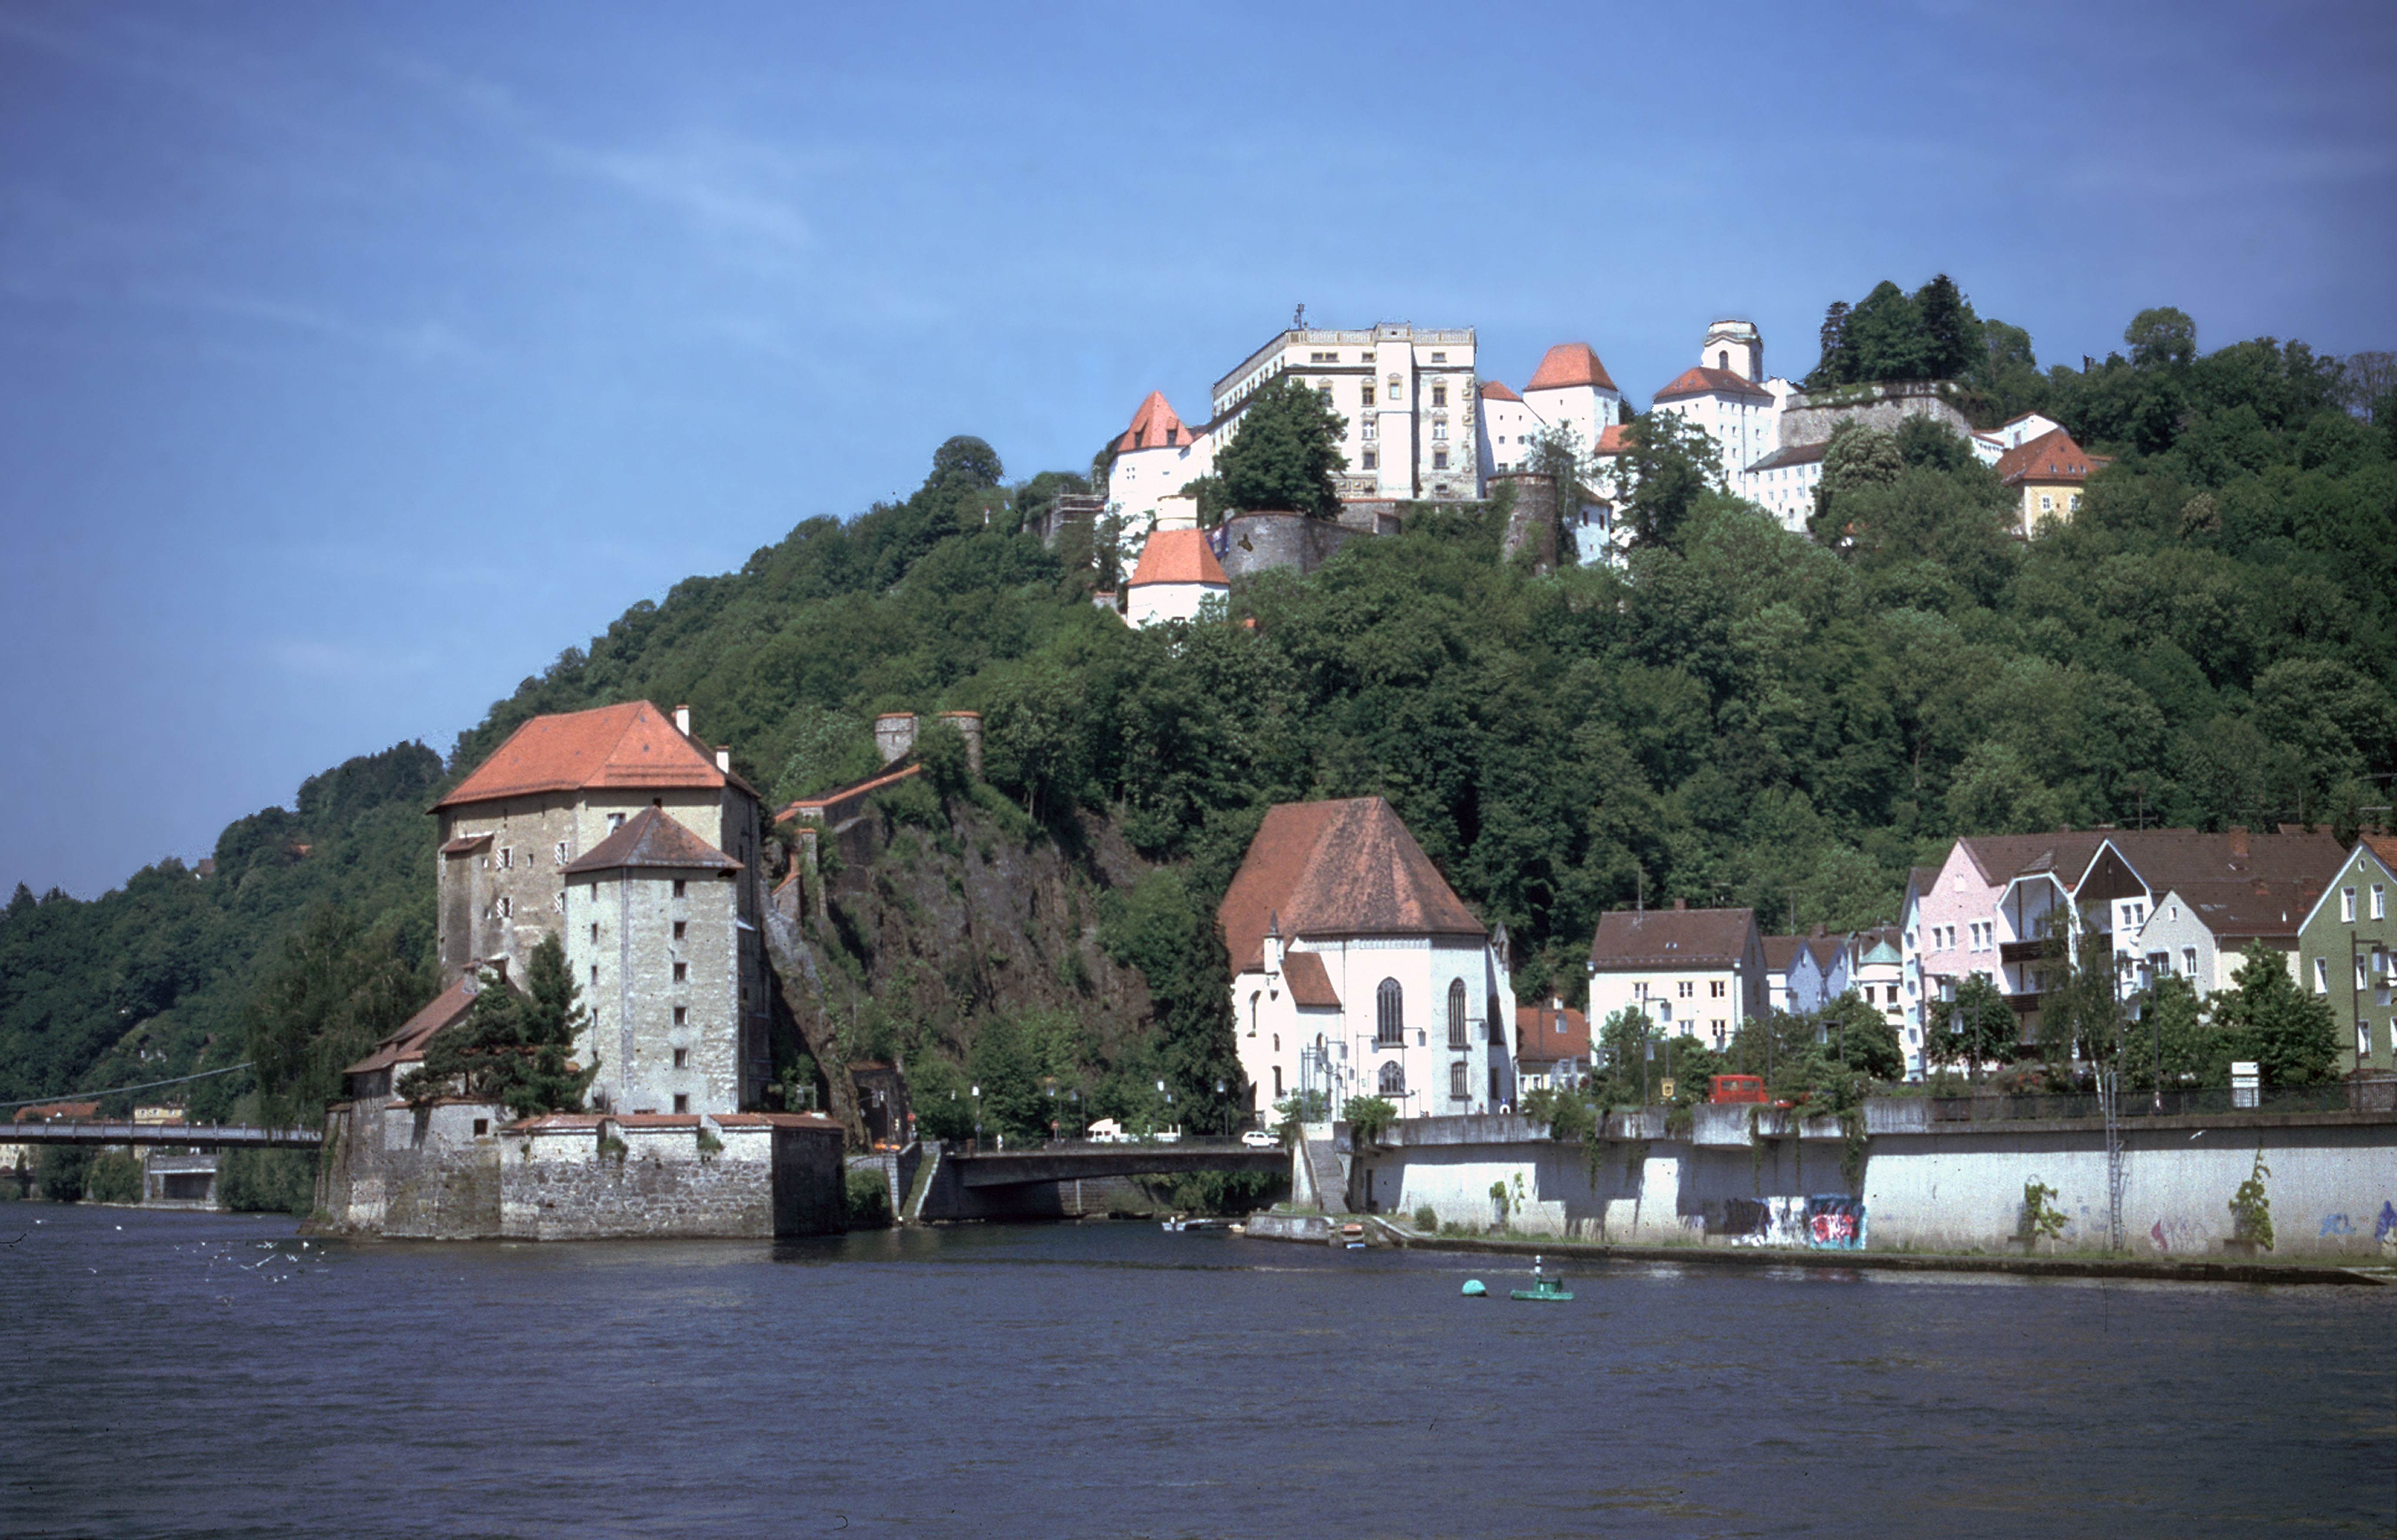 Die Veste von Passau - Oberhaus und Niederhaus.
